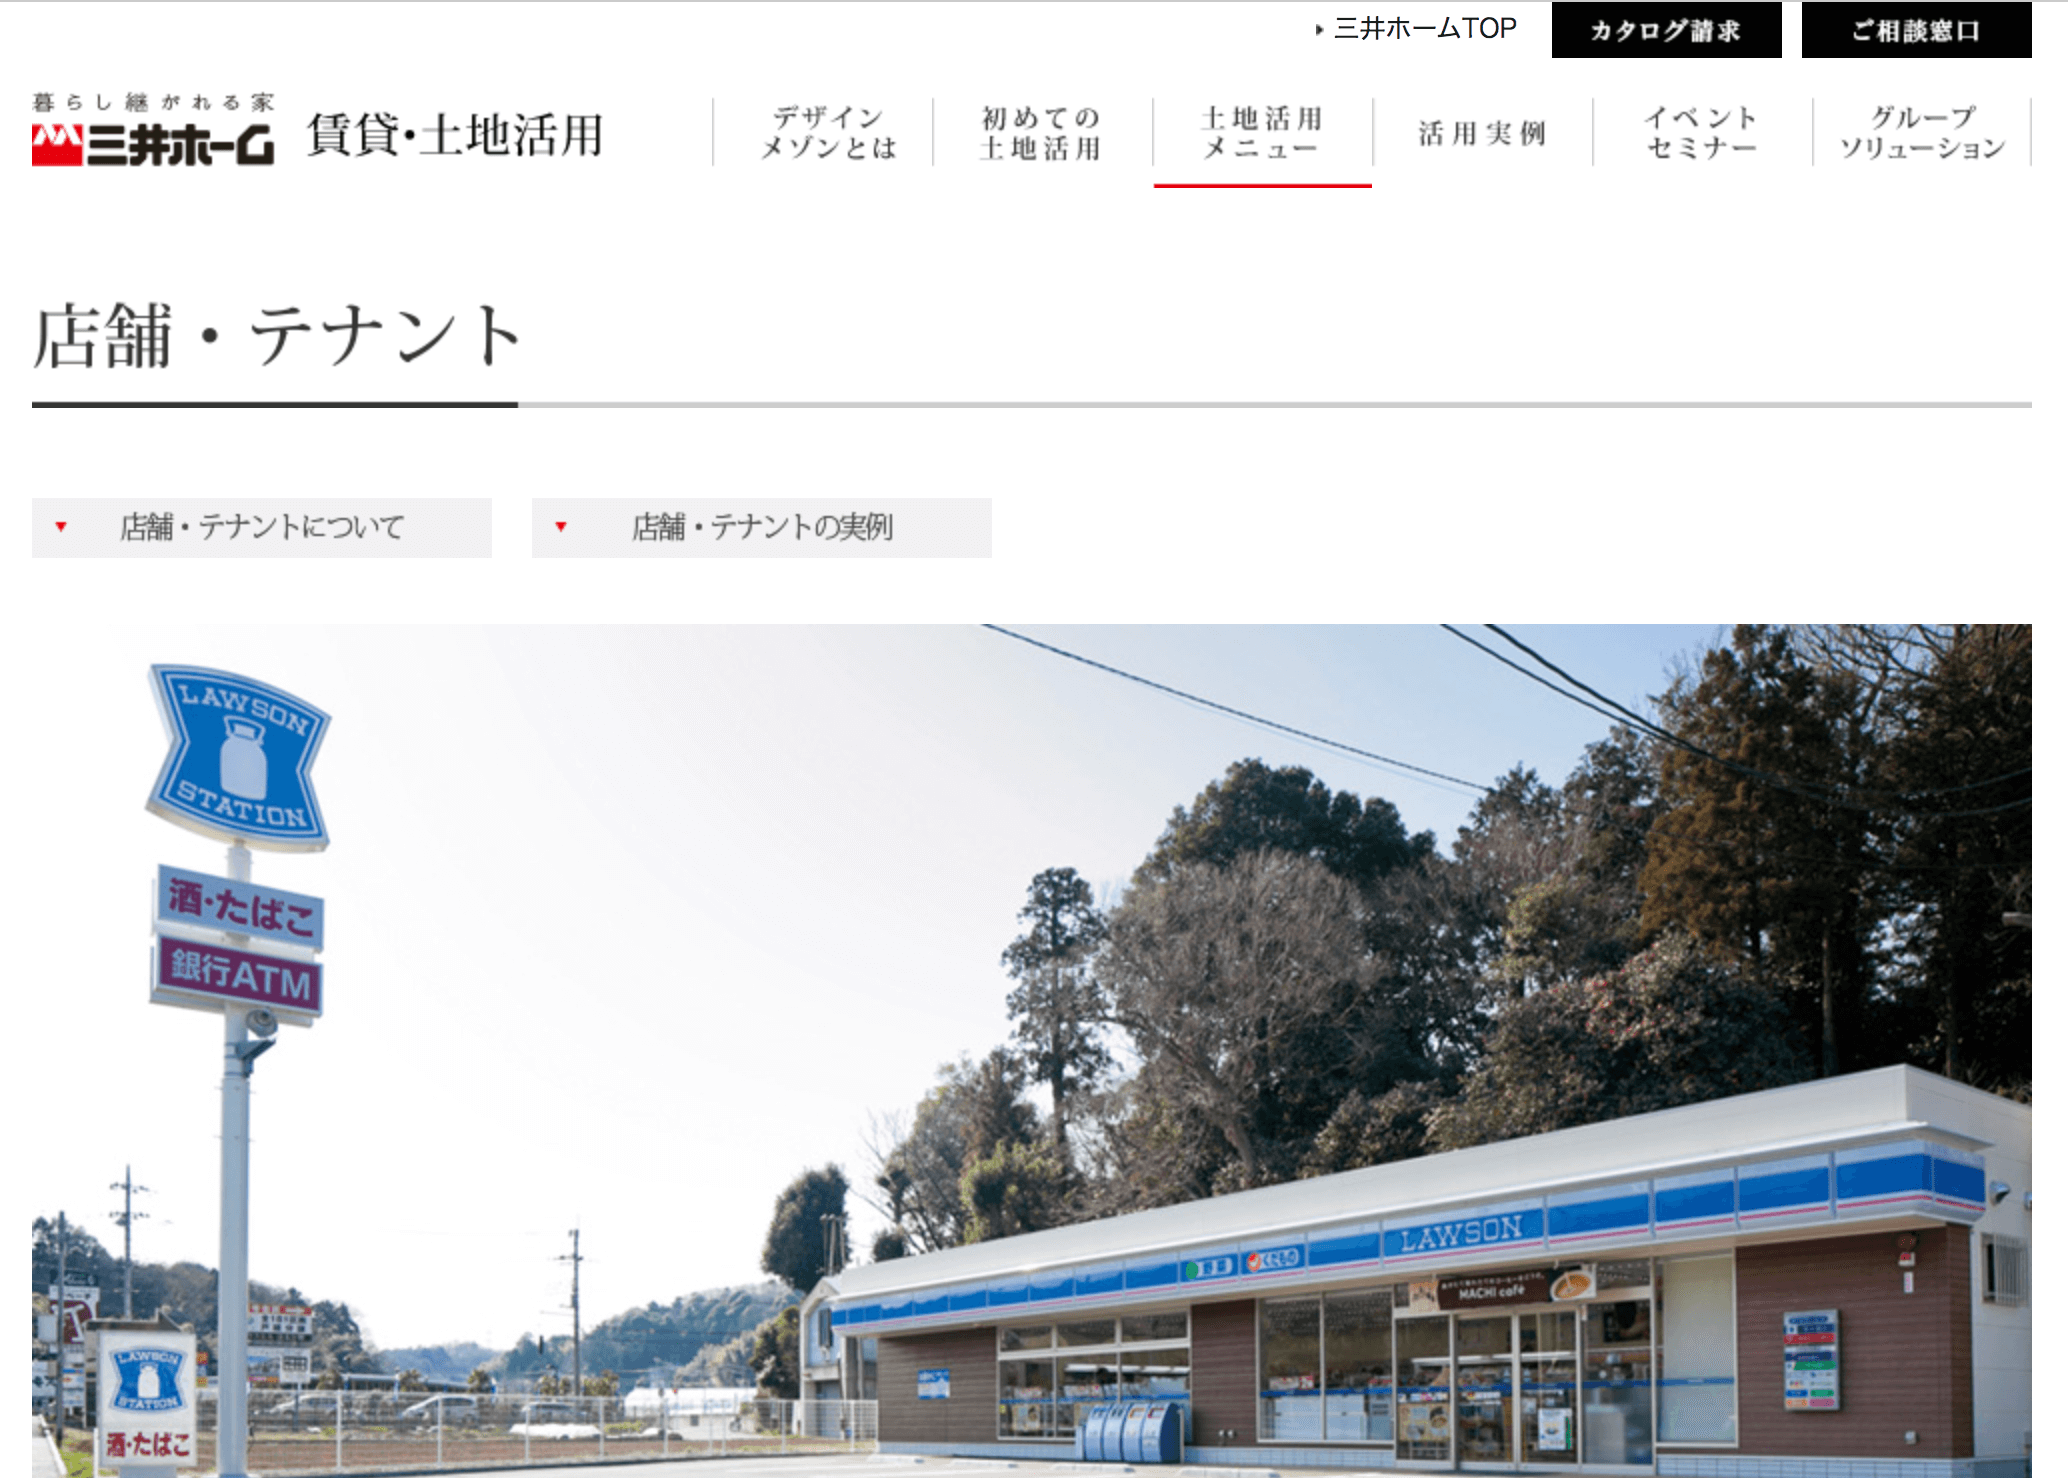 三井ホーム株式会社の公式ページ